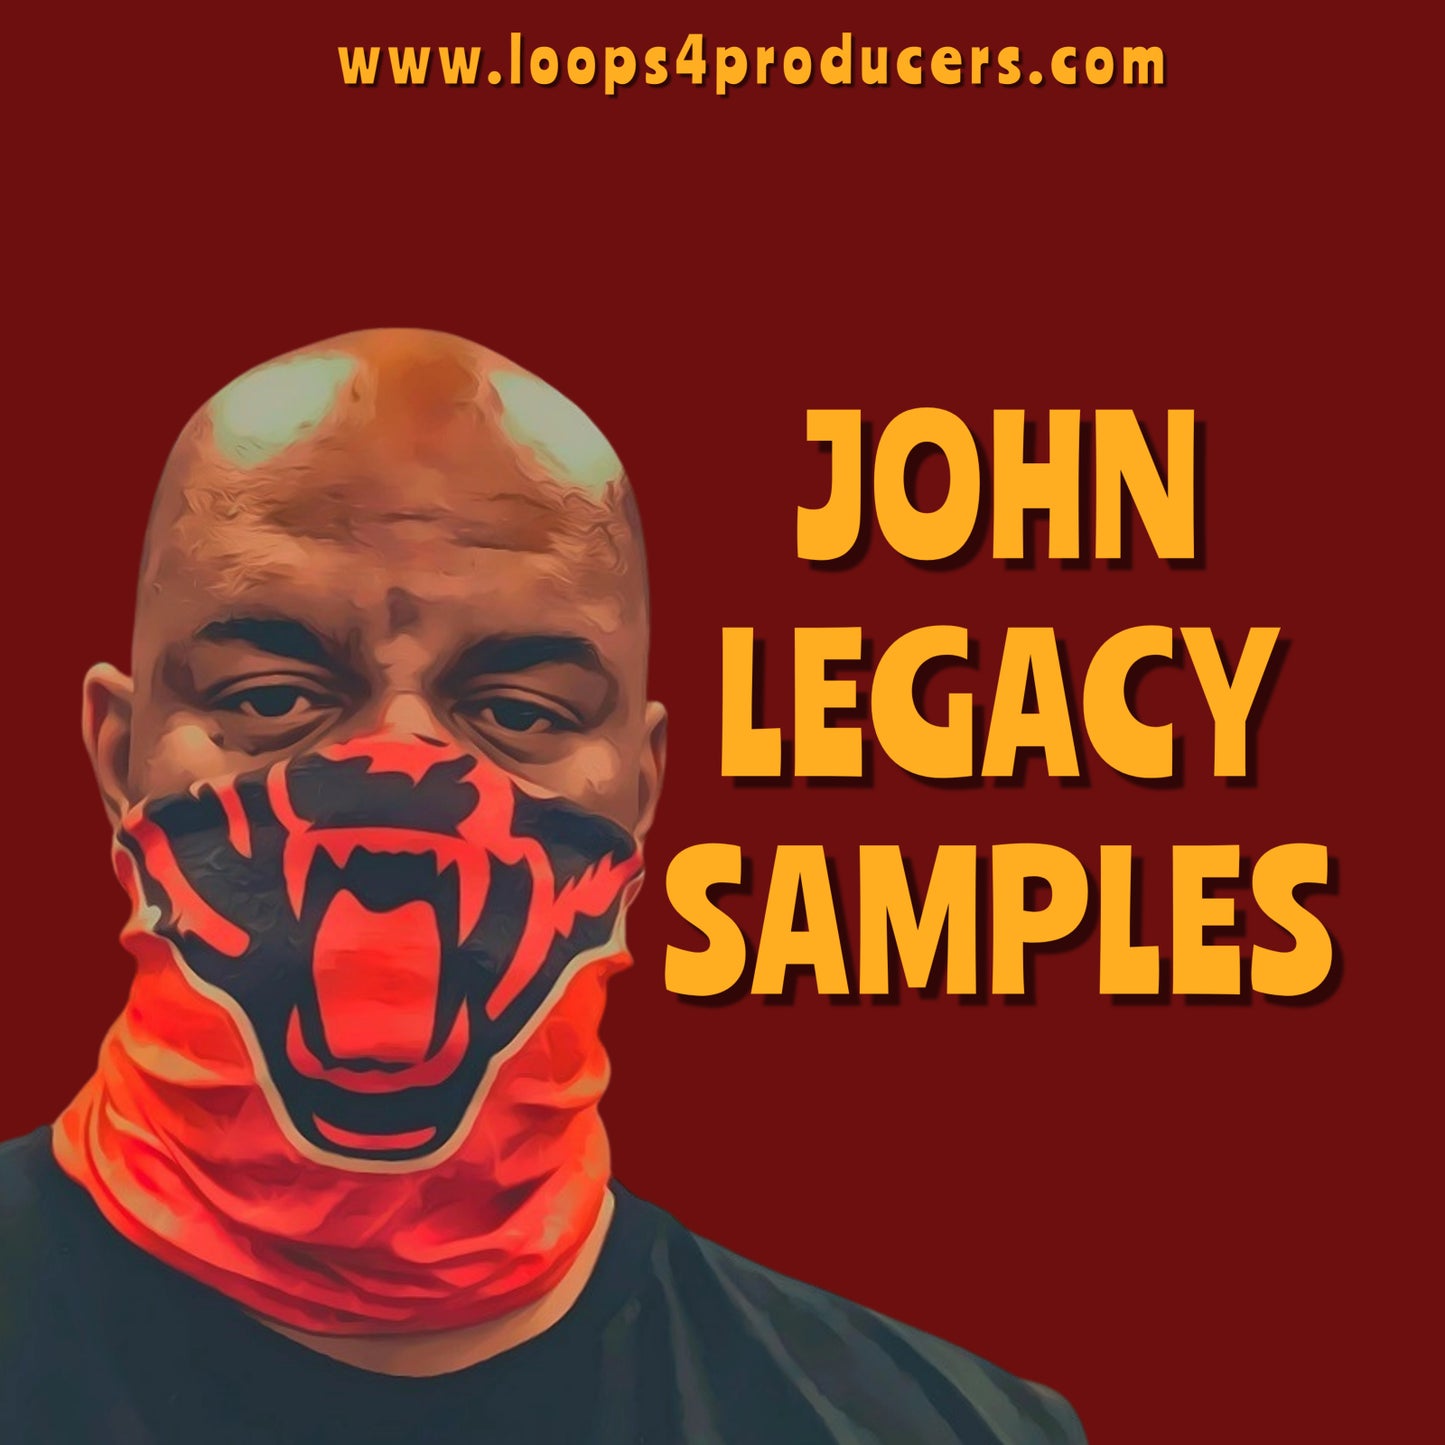 John Legacy Samples